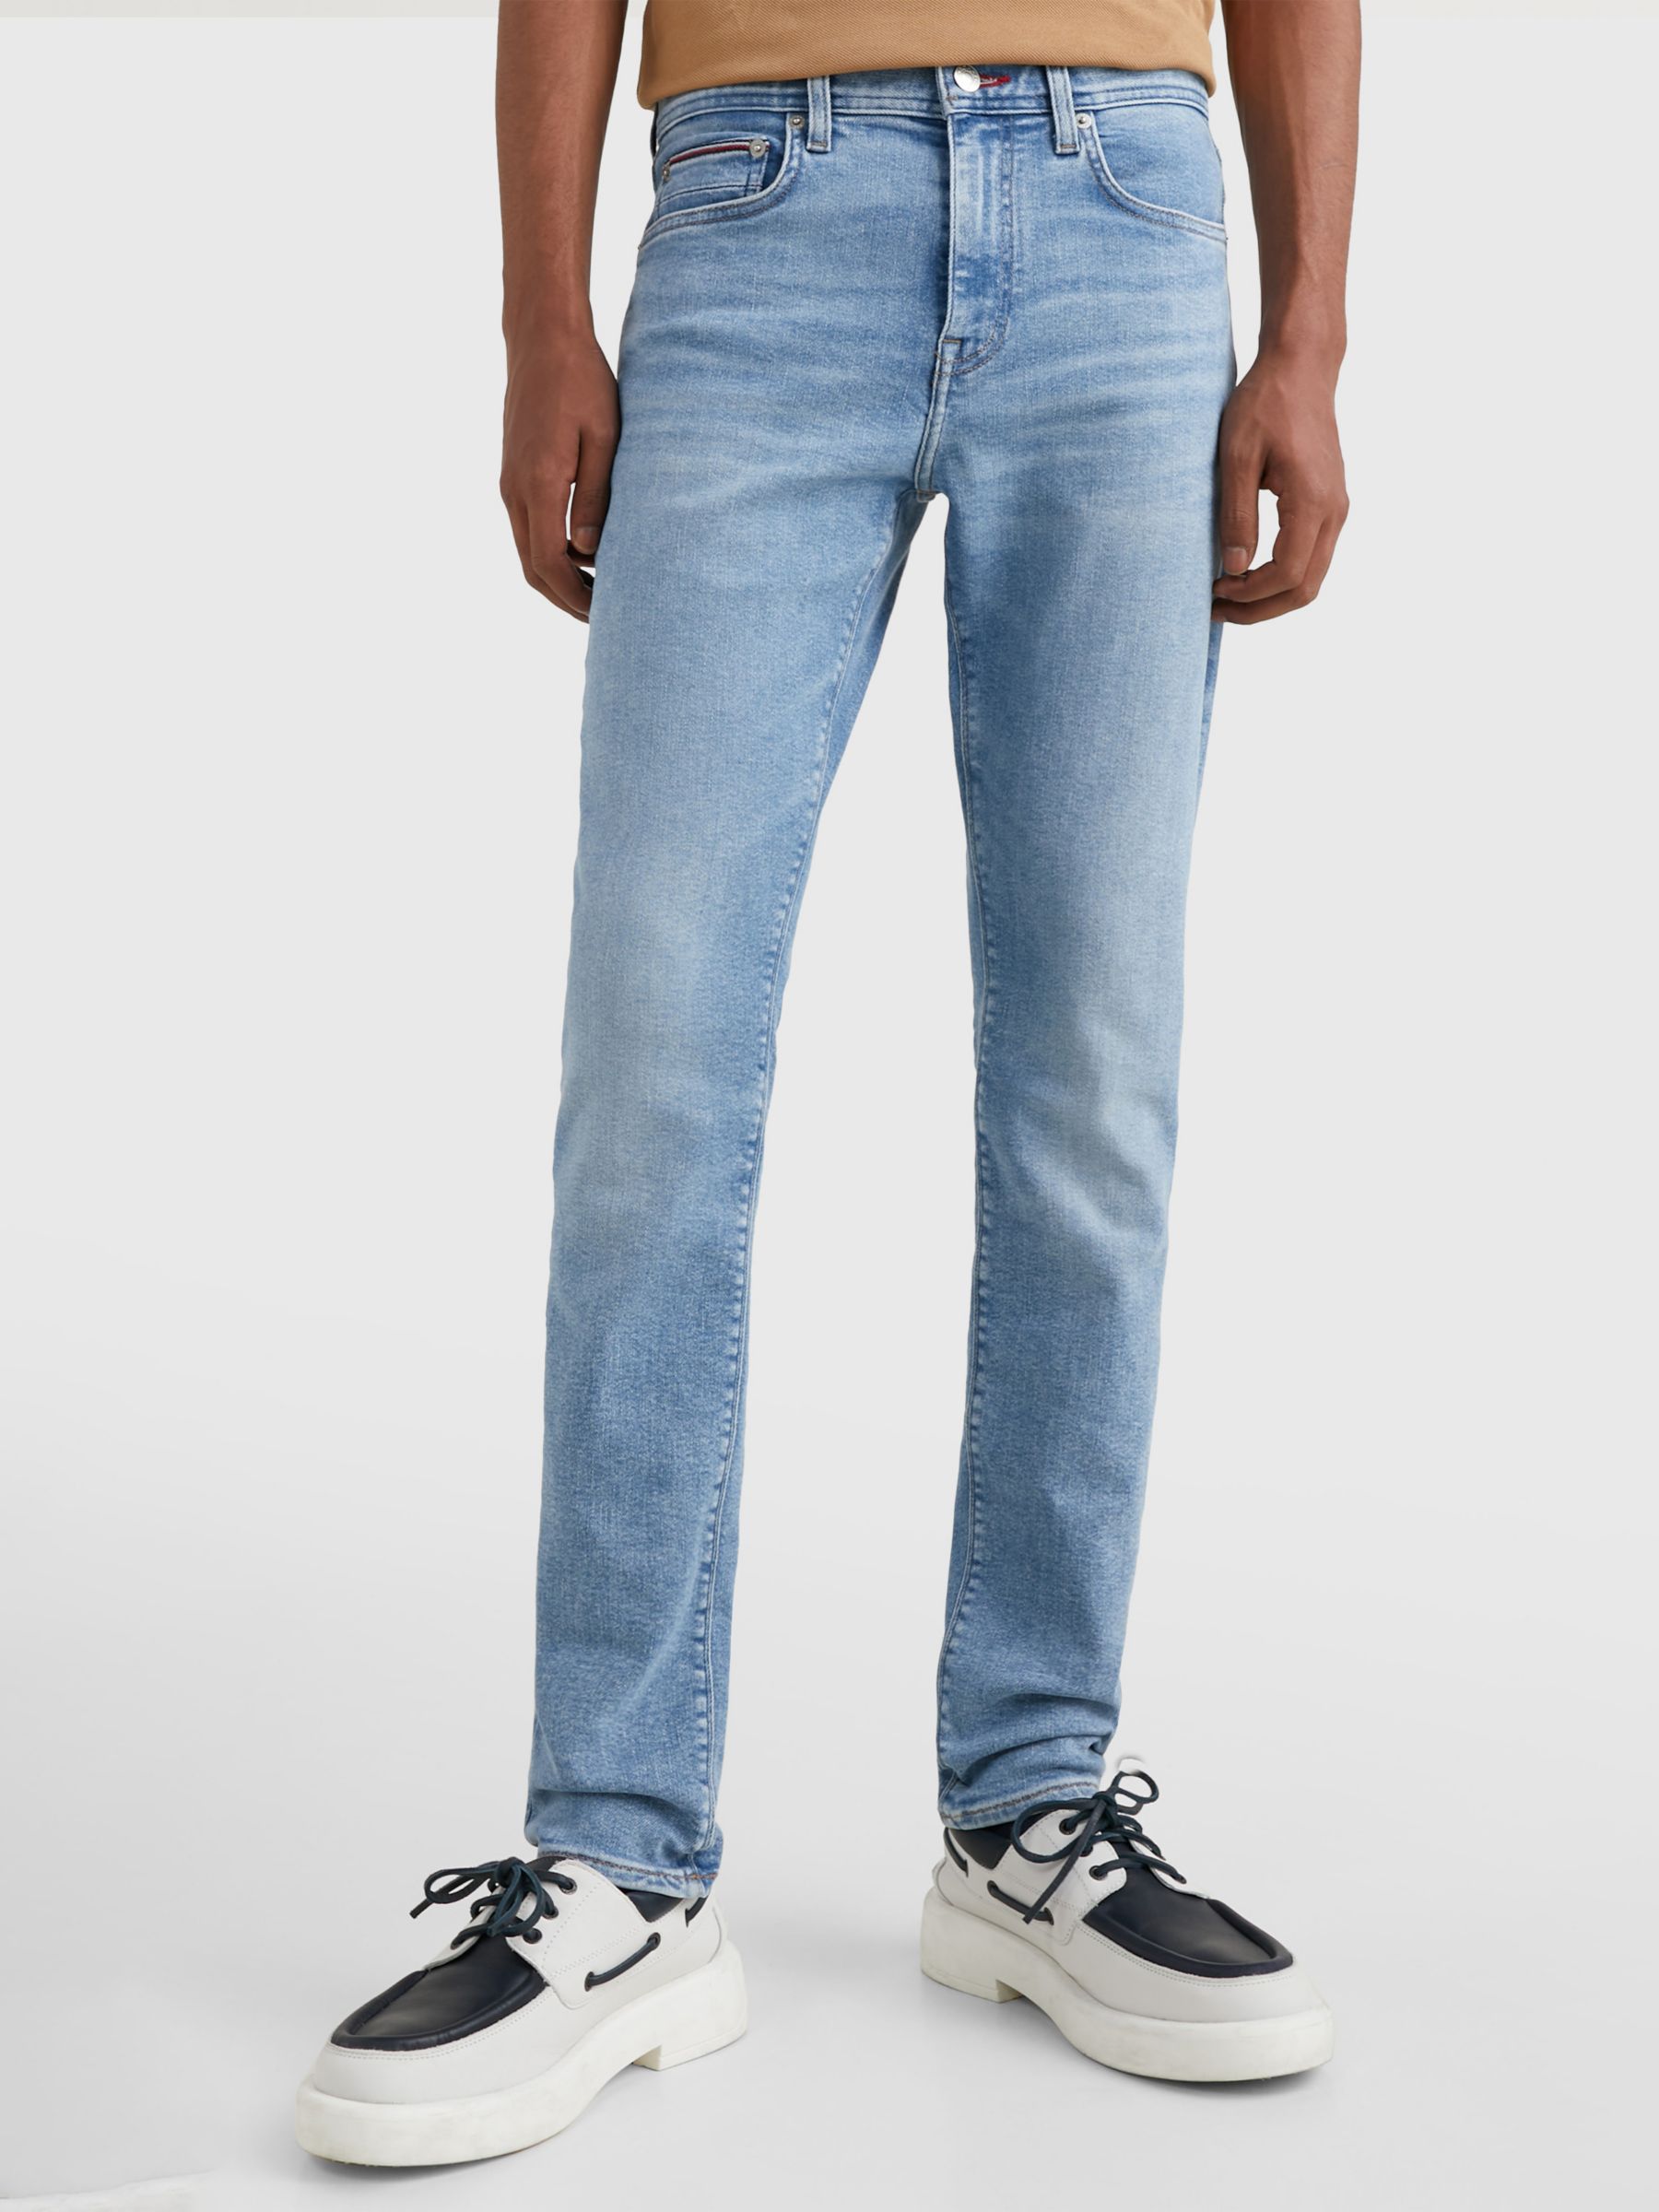 Styrke Universitet Produktiv Tommy Hilfiger Extra Slim Layton Jeans, Blue at John Lewis & Partners